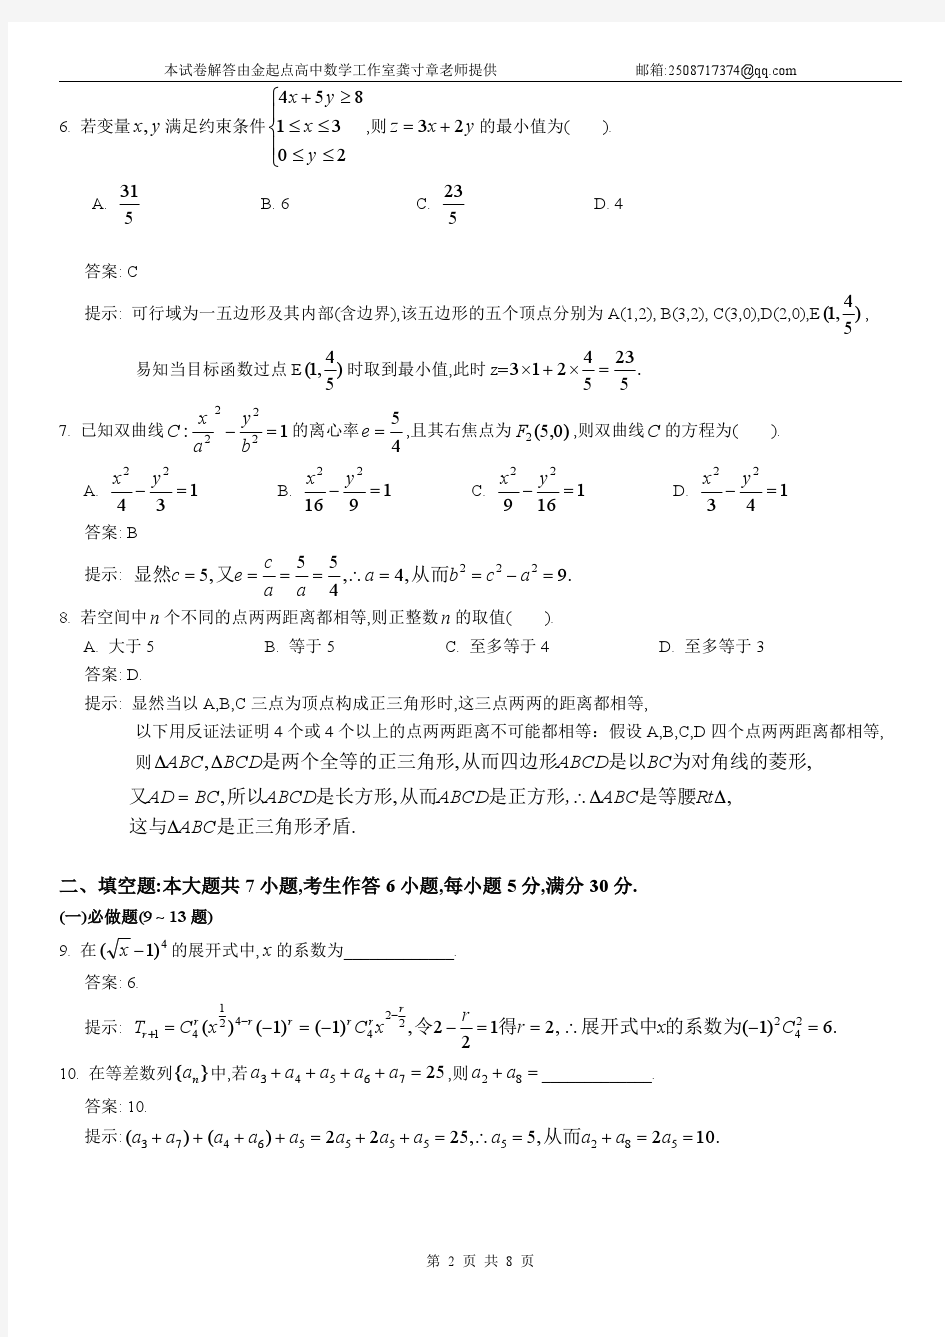 2015年广东高考数学(理科)试卷及答案